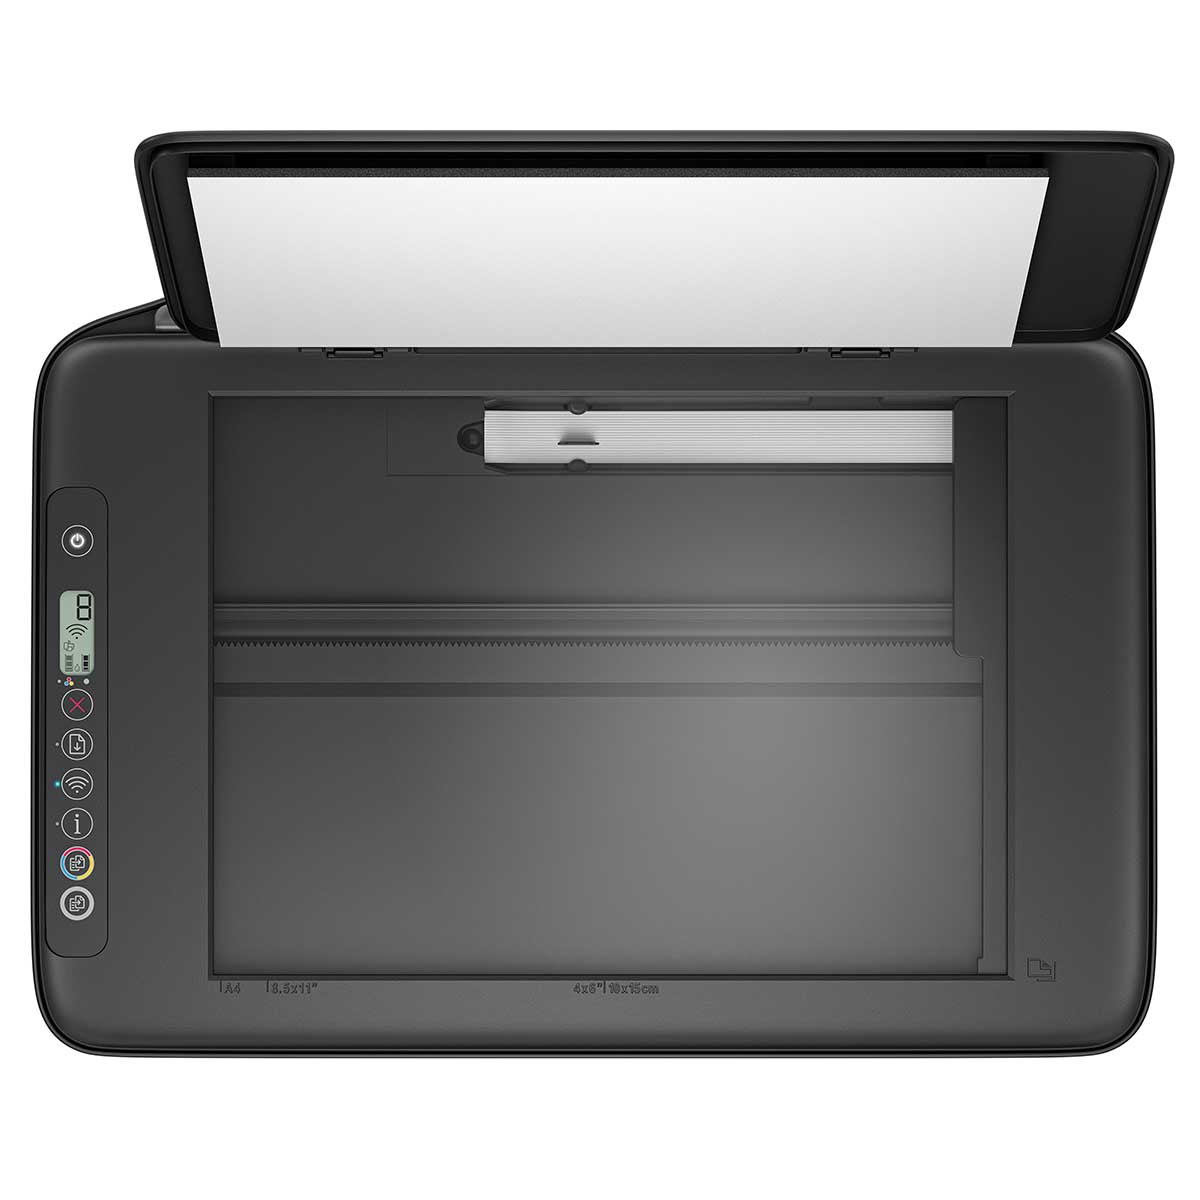 impressora-multifuncional-hp-deskjet-ink-advantage-2874-wi-fi-usb--6w7g2a--preto-bivolt-4.jpg